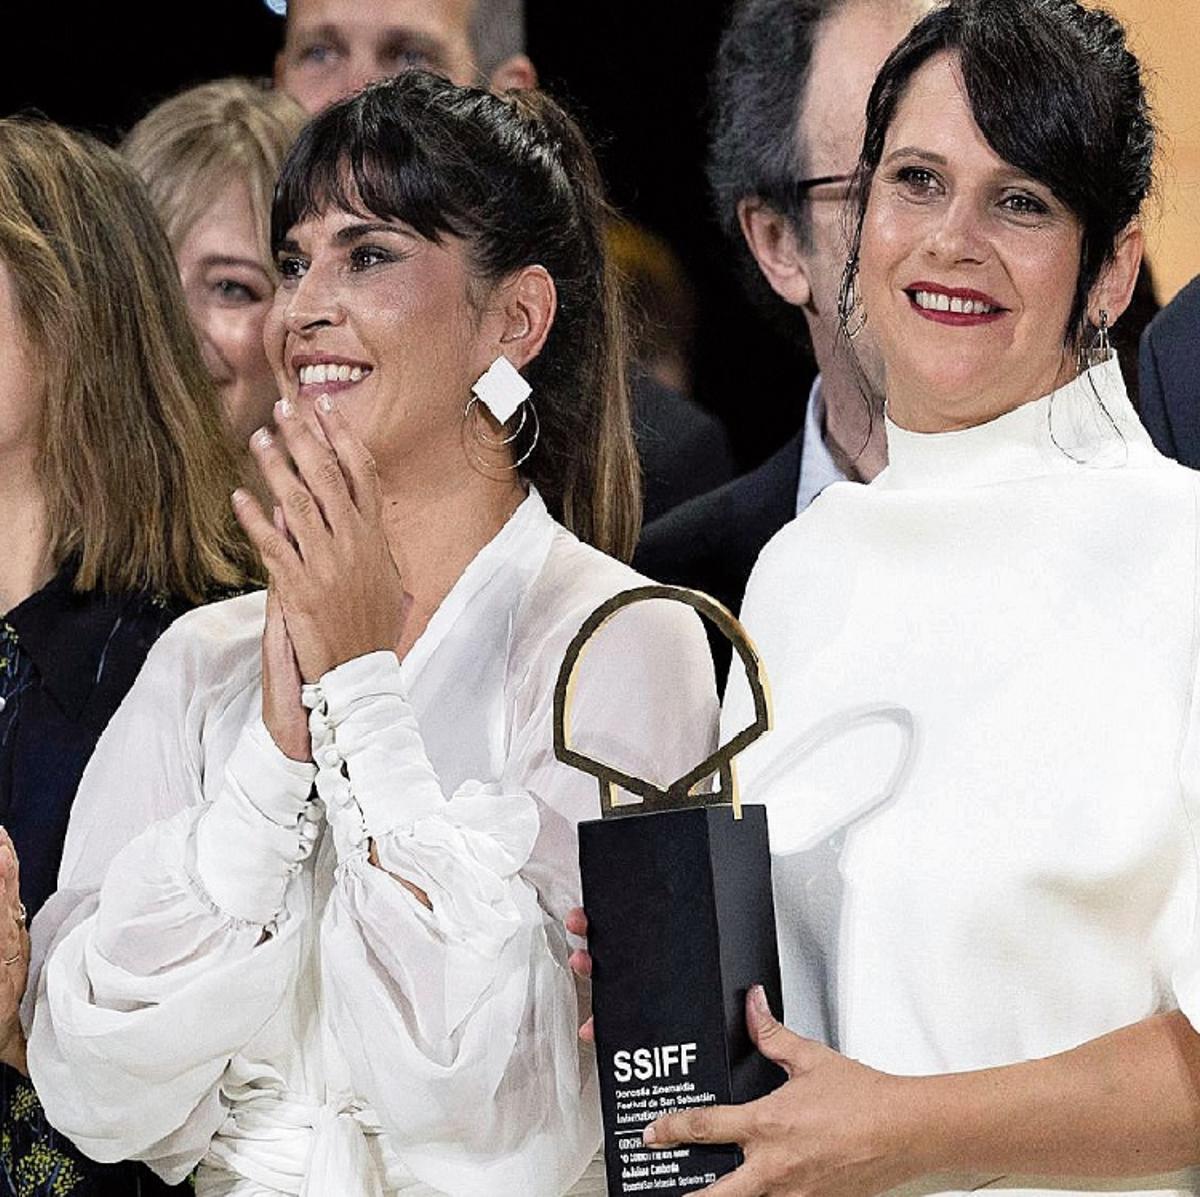 Gala de clausura del Festival Internacional de Cine de San Sebastián, Jaione Camborda con el premio y Janet a su lado, de blanco.